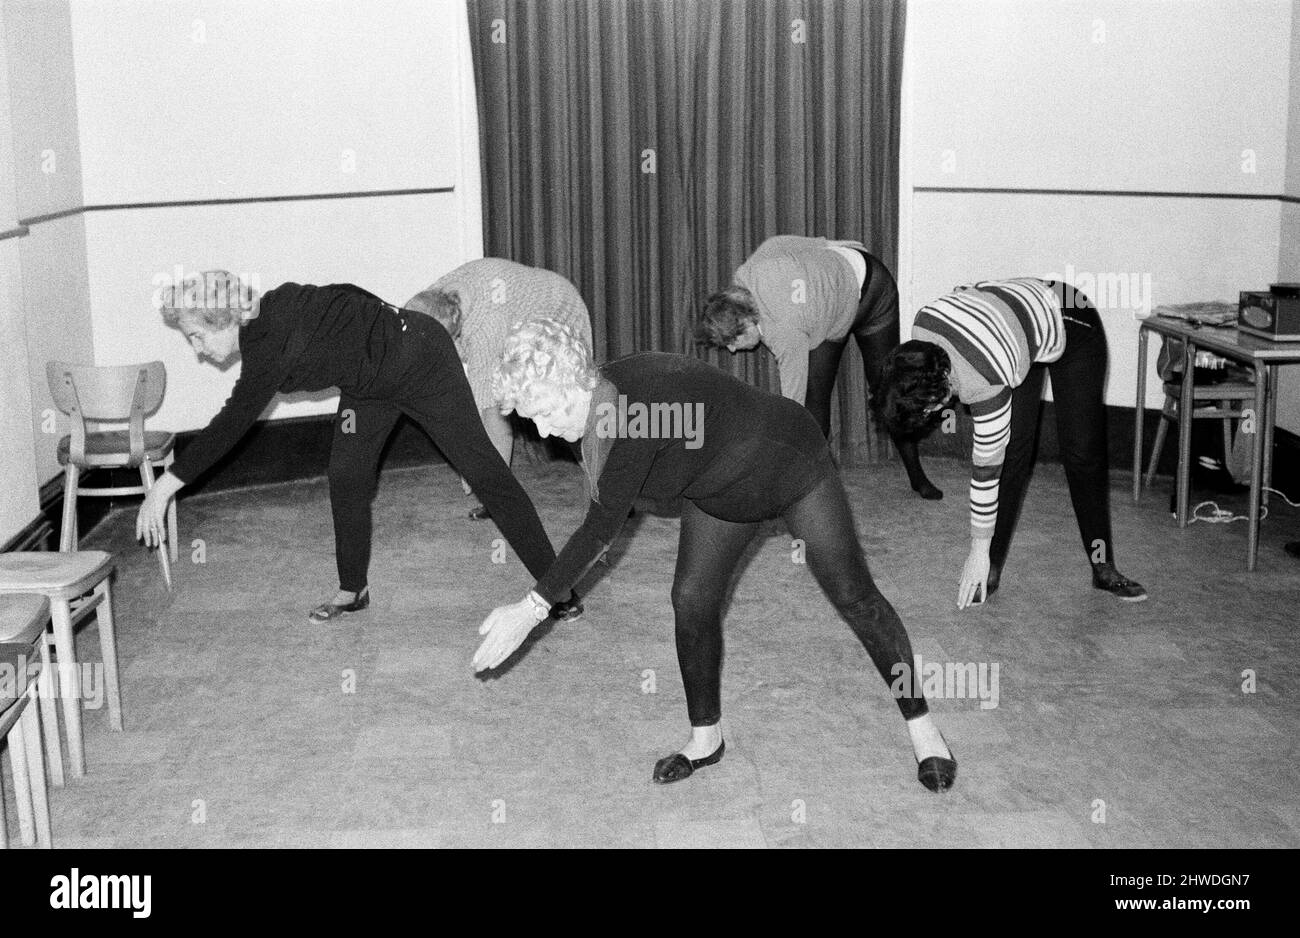 Cornwalls erstaunlichste Großmutter, Mrs Mary Wyatt (75 im April nächsten Jahres), tanzt sich in das neue Jahrzehnt der 1970s, bekleidet mit schwarzen Tanzstrumpfhosen, die einer Klasse von Frauen zeigen, wie sie energische und athletische Arm- und Beinstrecken zur Musik machen. Frau Wyatt hielt ihre erste Keep Fit-Klasse der 1970s in den Gemeinschaftsräumen im Guildhall in St. Ives, Cornwall. 2.. Januar 1970.Cornwalls erstaunlichste Großmutter, Mrs Mary Wyatt (75 im April nächsten Jahres), tanzt sich in das neue Jahrzehnt der 1970s, bekleidet mit schwarzen Tanzstrumpfhosen, die einer Klasse von Frauen zeigen, wie sie energische und athletische Arm- und Beinstrecken bis zum Mus machen Stockfoto